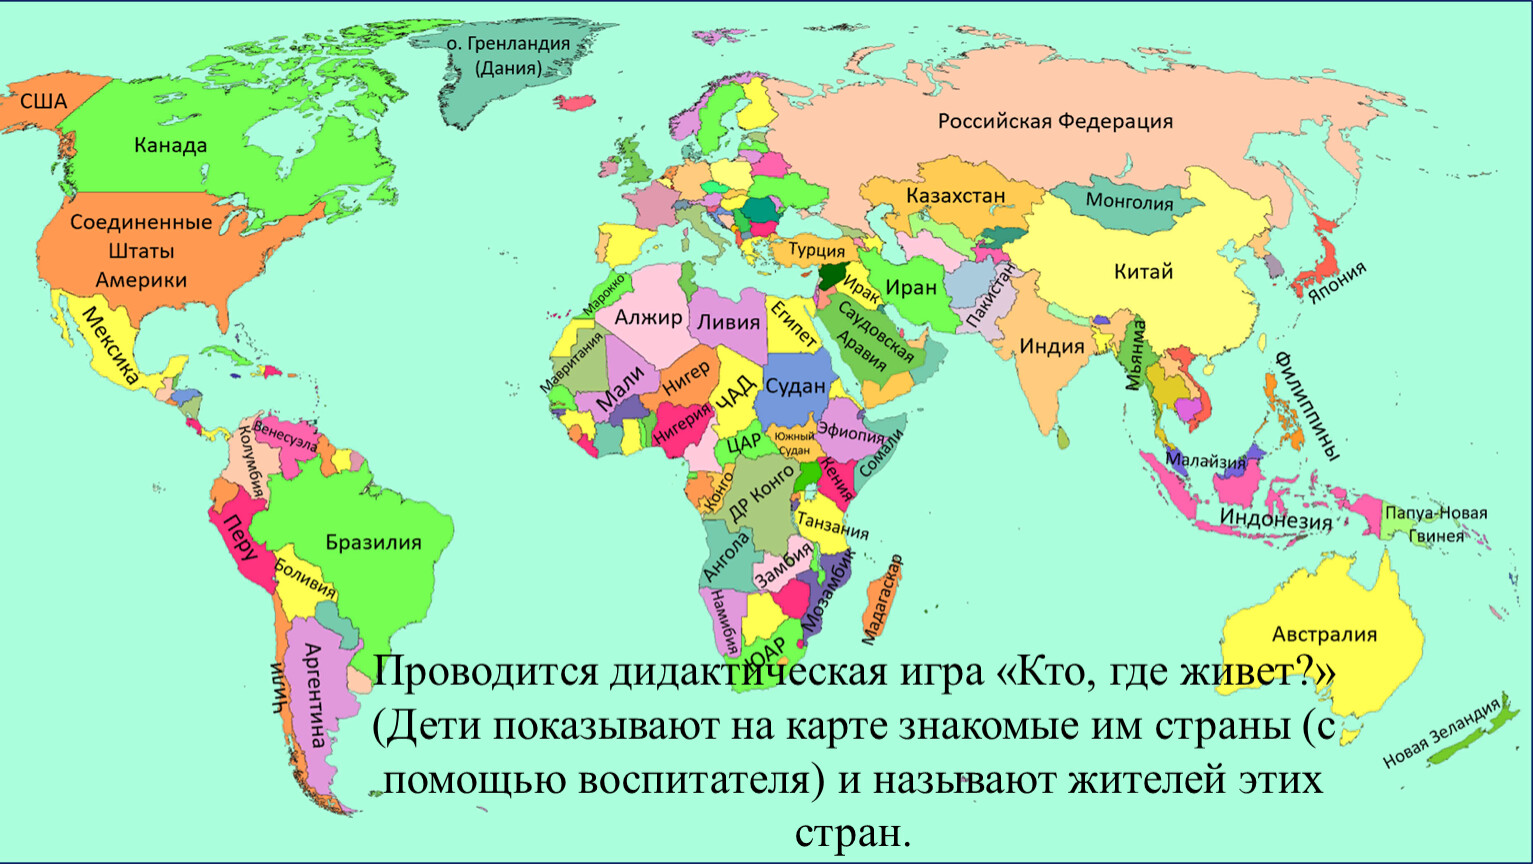 Политическая карта мира с названиями стран на русском языке